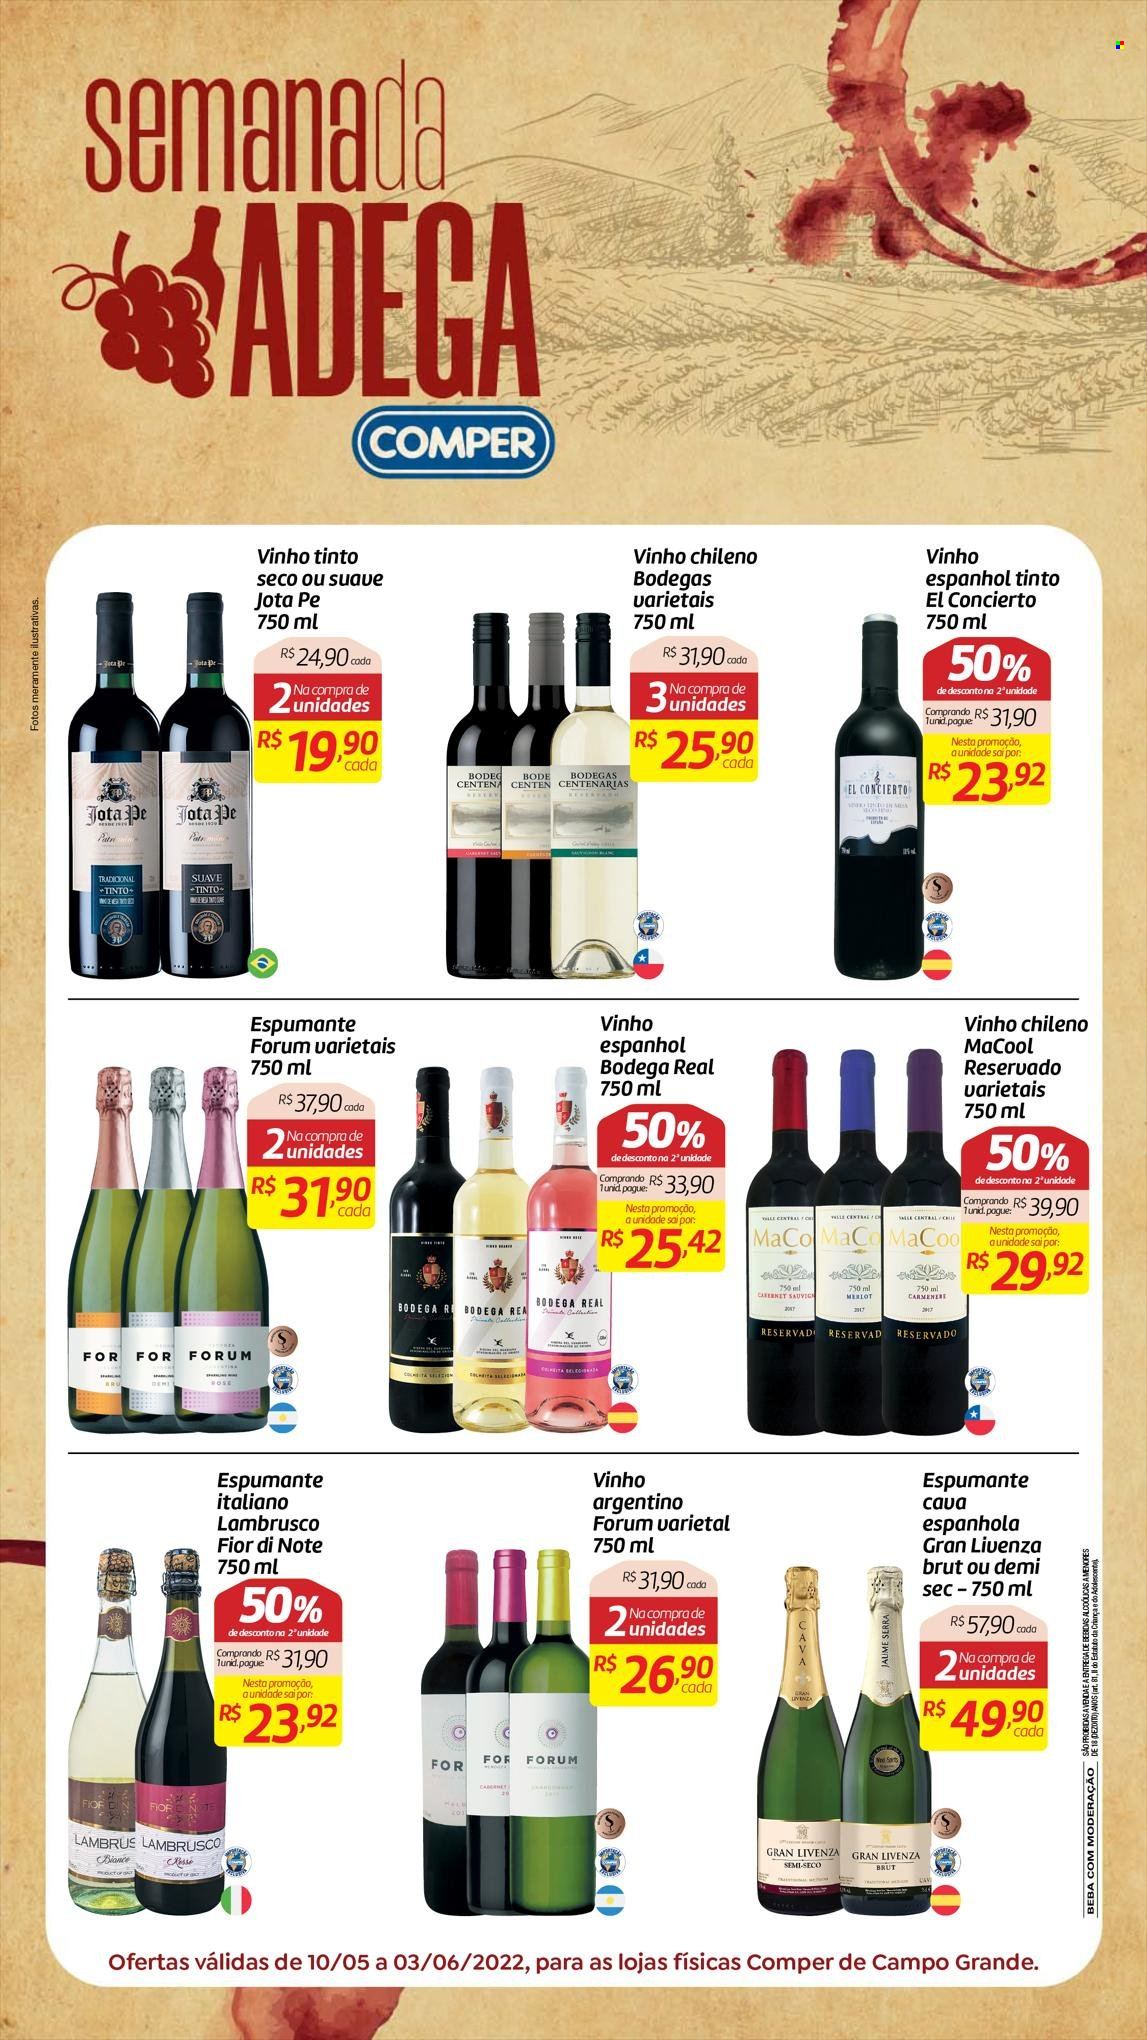 thumbnail - Folheto Comper - 10/05/2022 - 03/06/2022 - Produtos em promoção - paté, vinho, espumante, vinho argentino, vinho chileno, vinho tinto, merlot, lambrusco. Página 1.